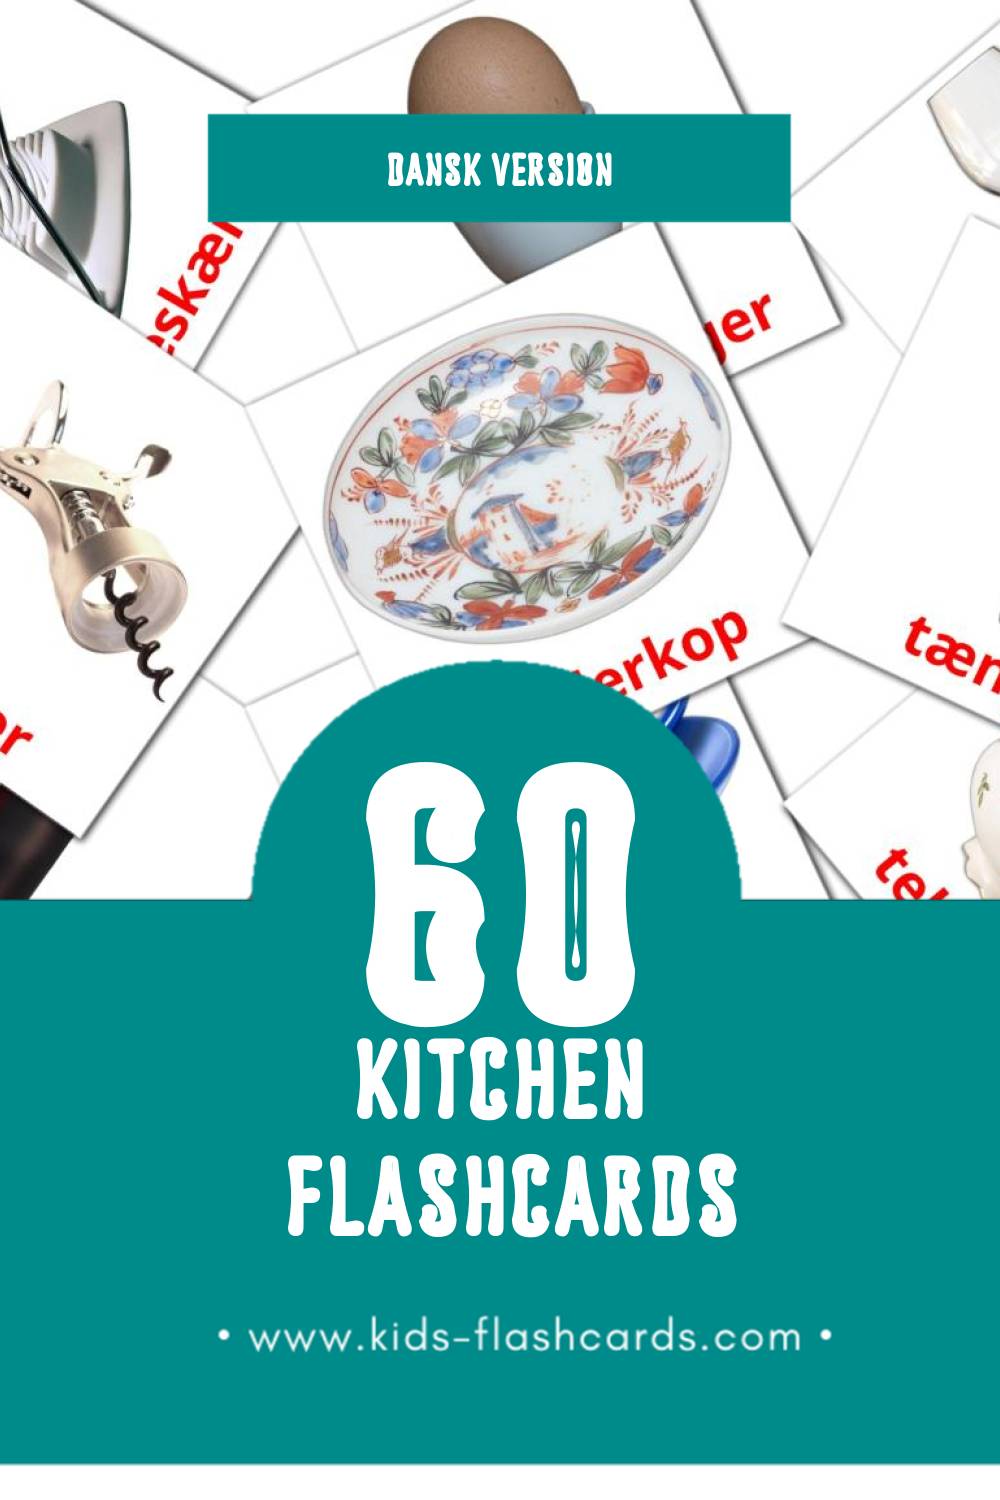 Visual Køkken Flashcards for Toddlers (64 cards in Dansk)